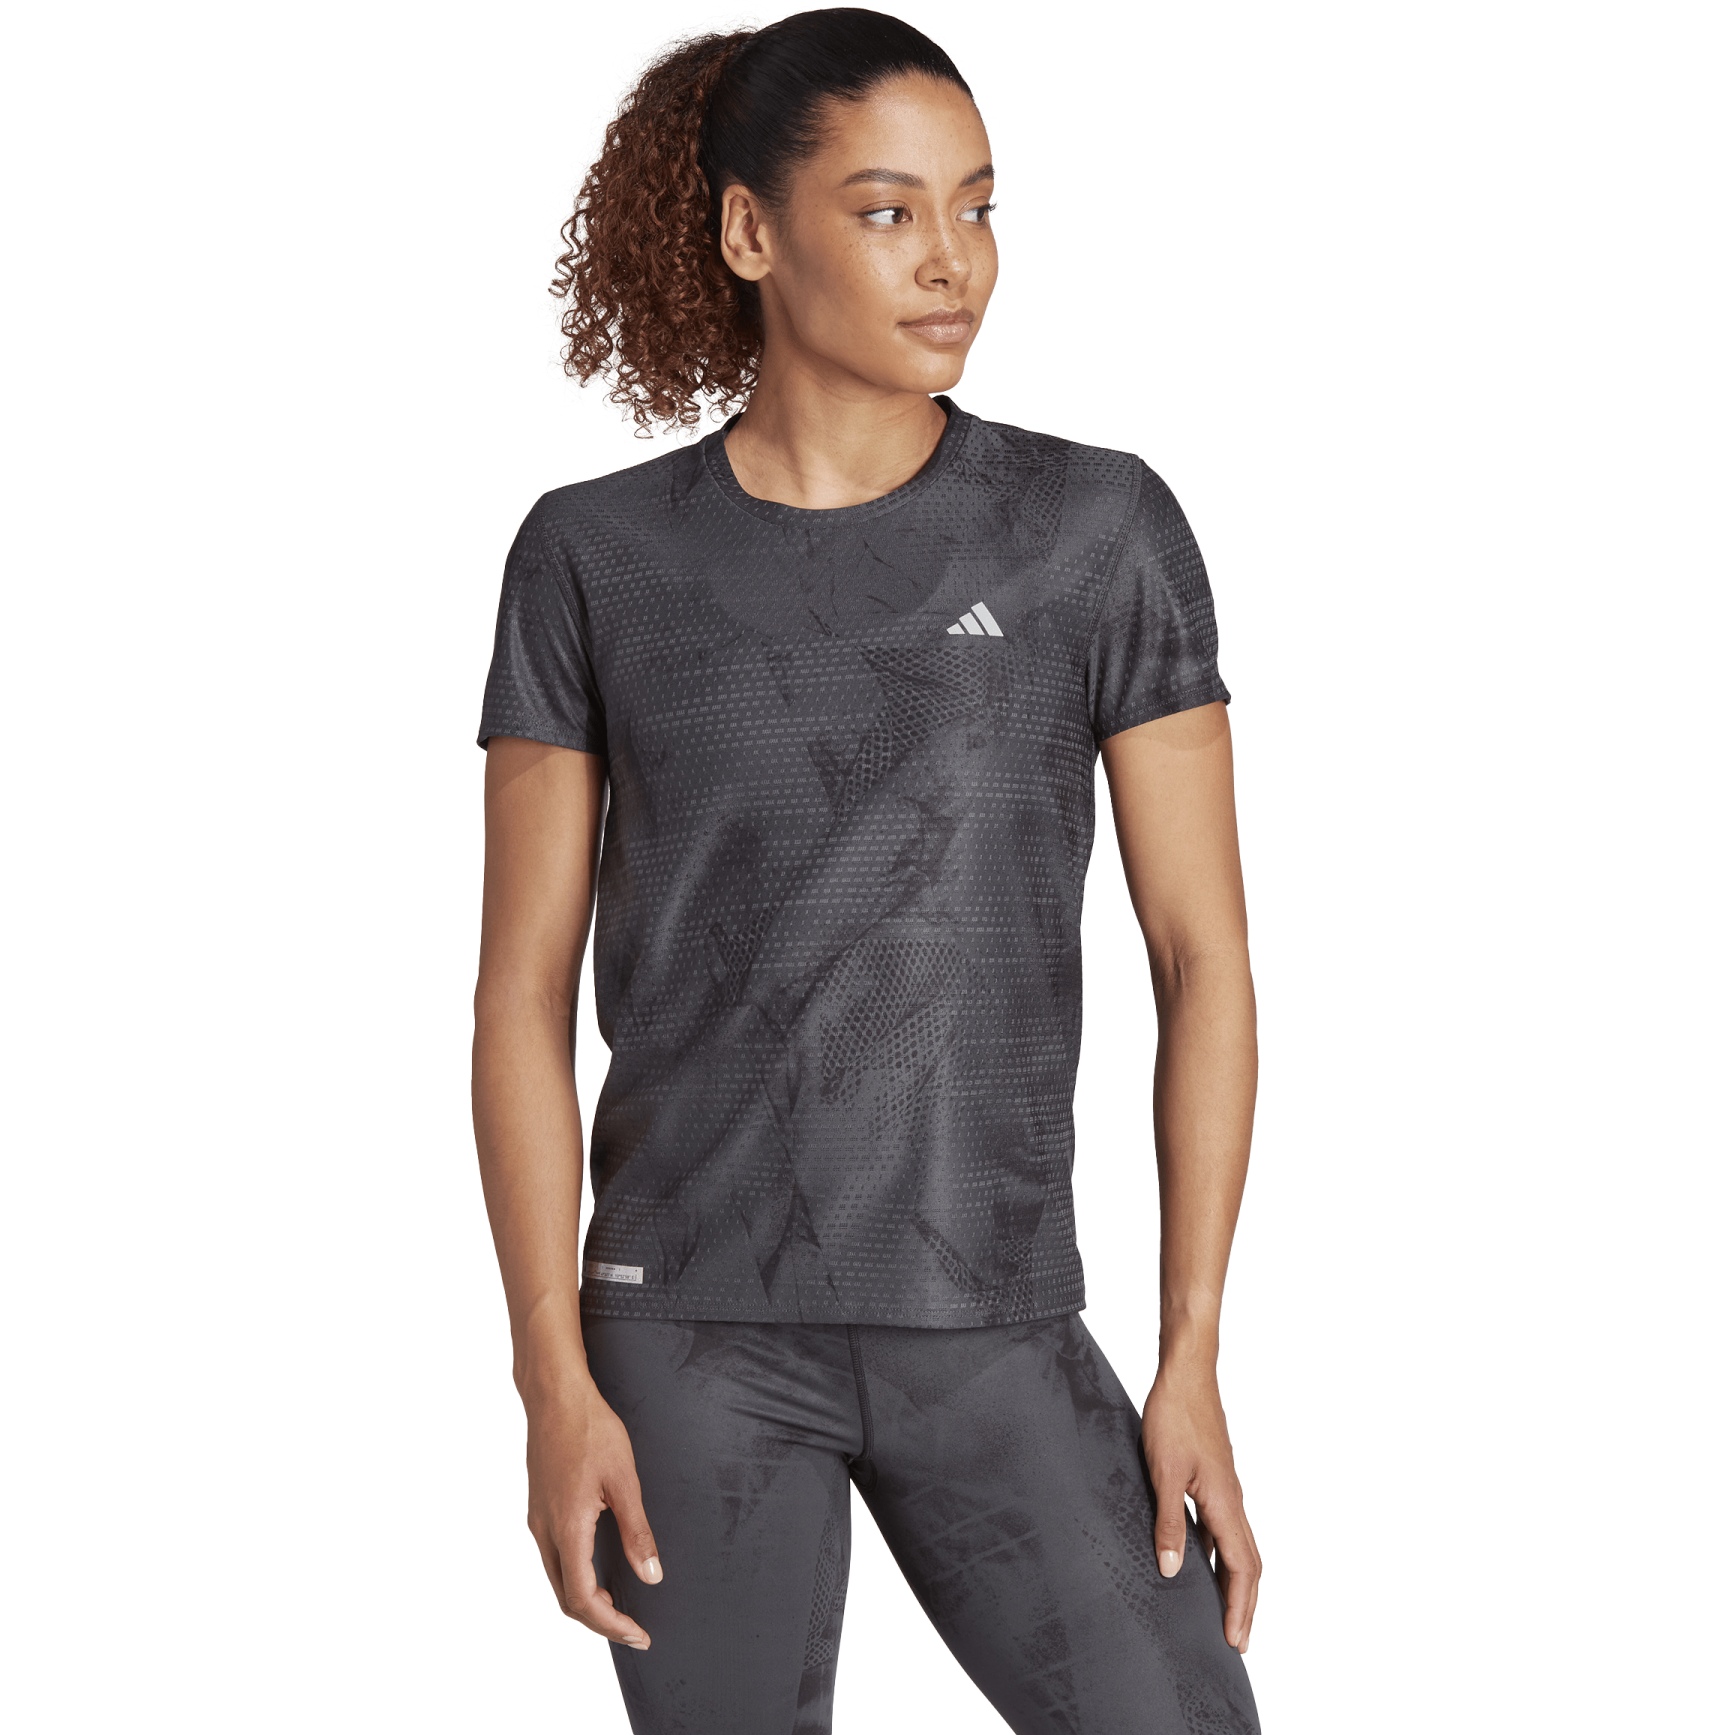 Produktbild von adidas Ultimate Allover Print Laufshirt Damen - carbon/black IN0630